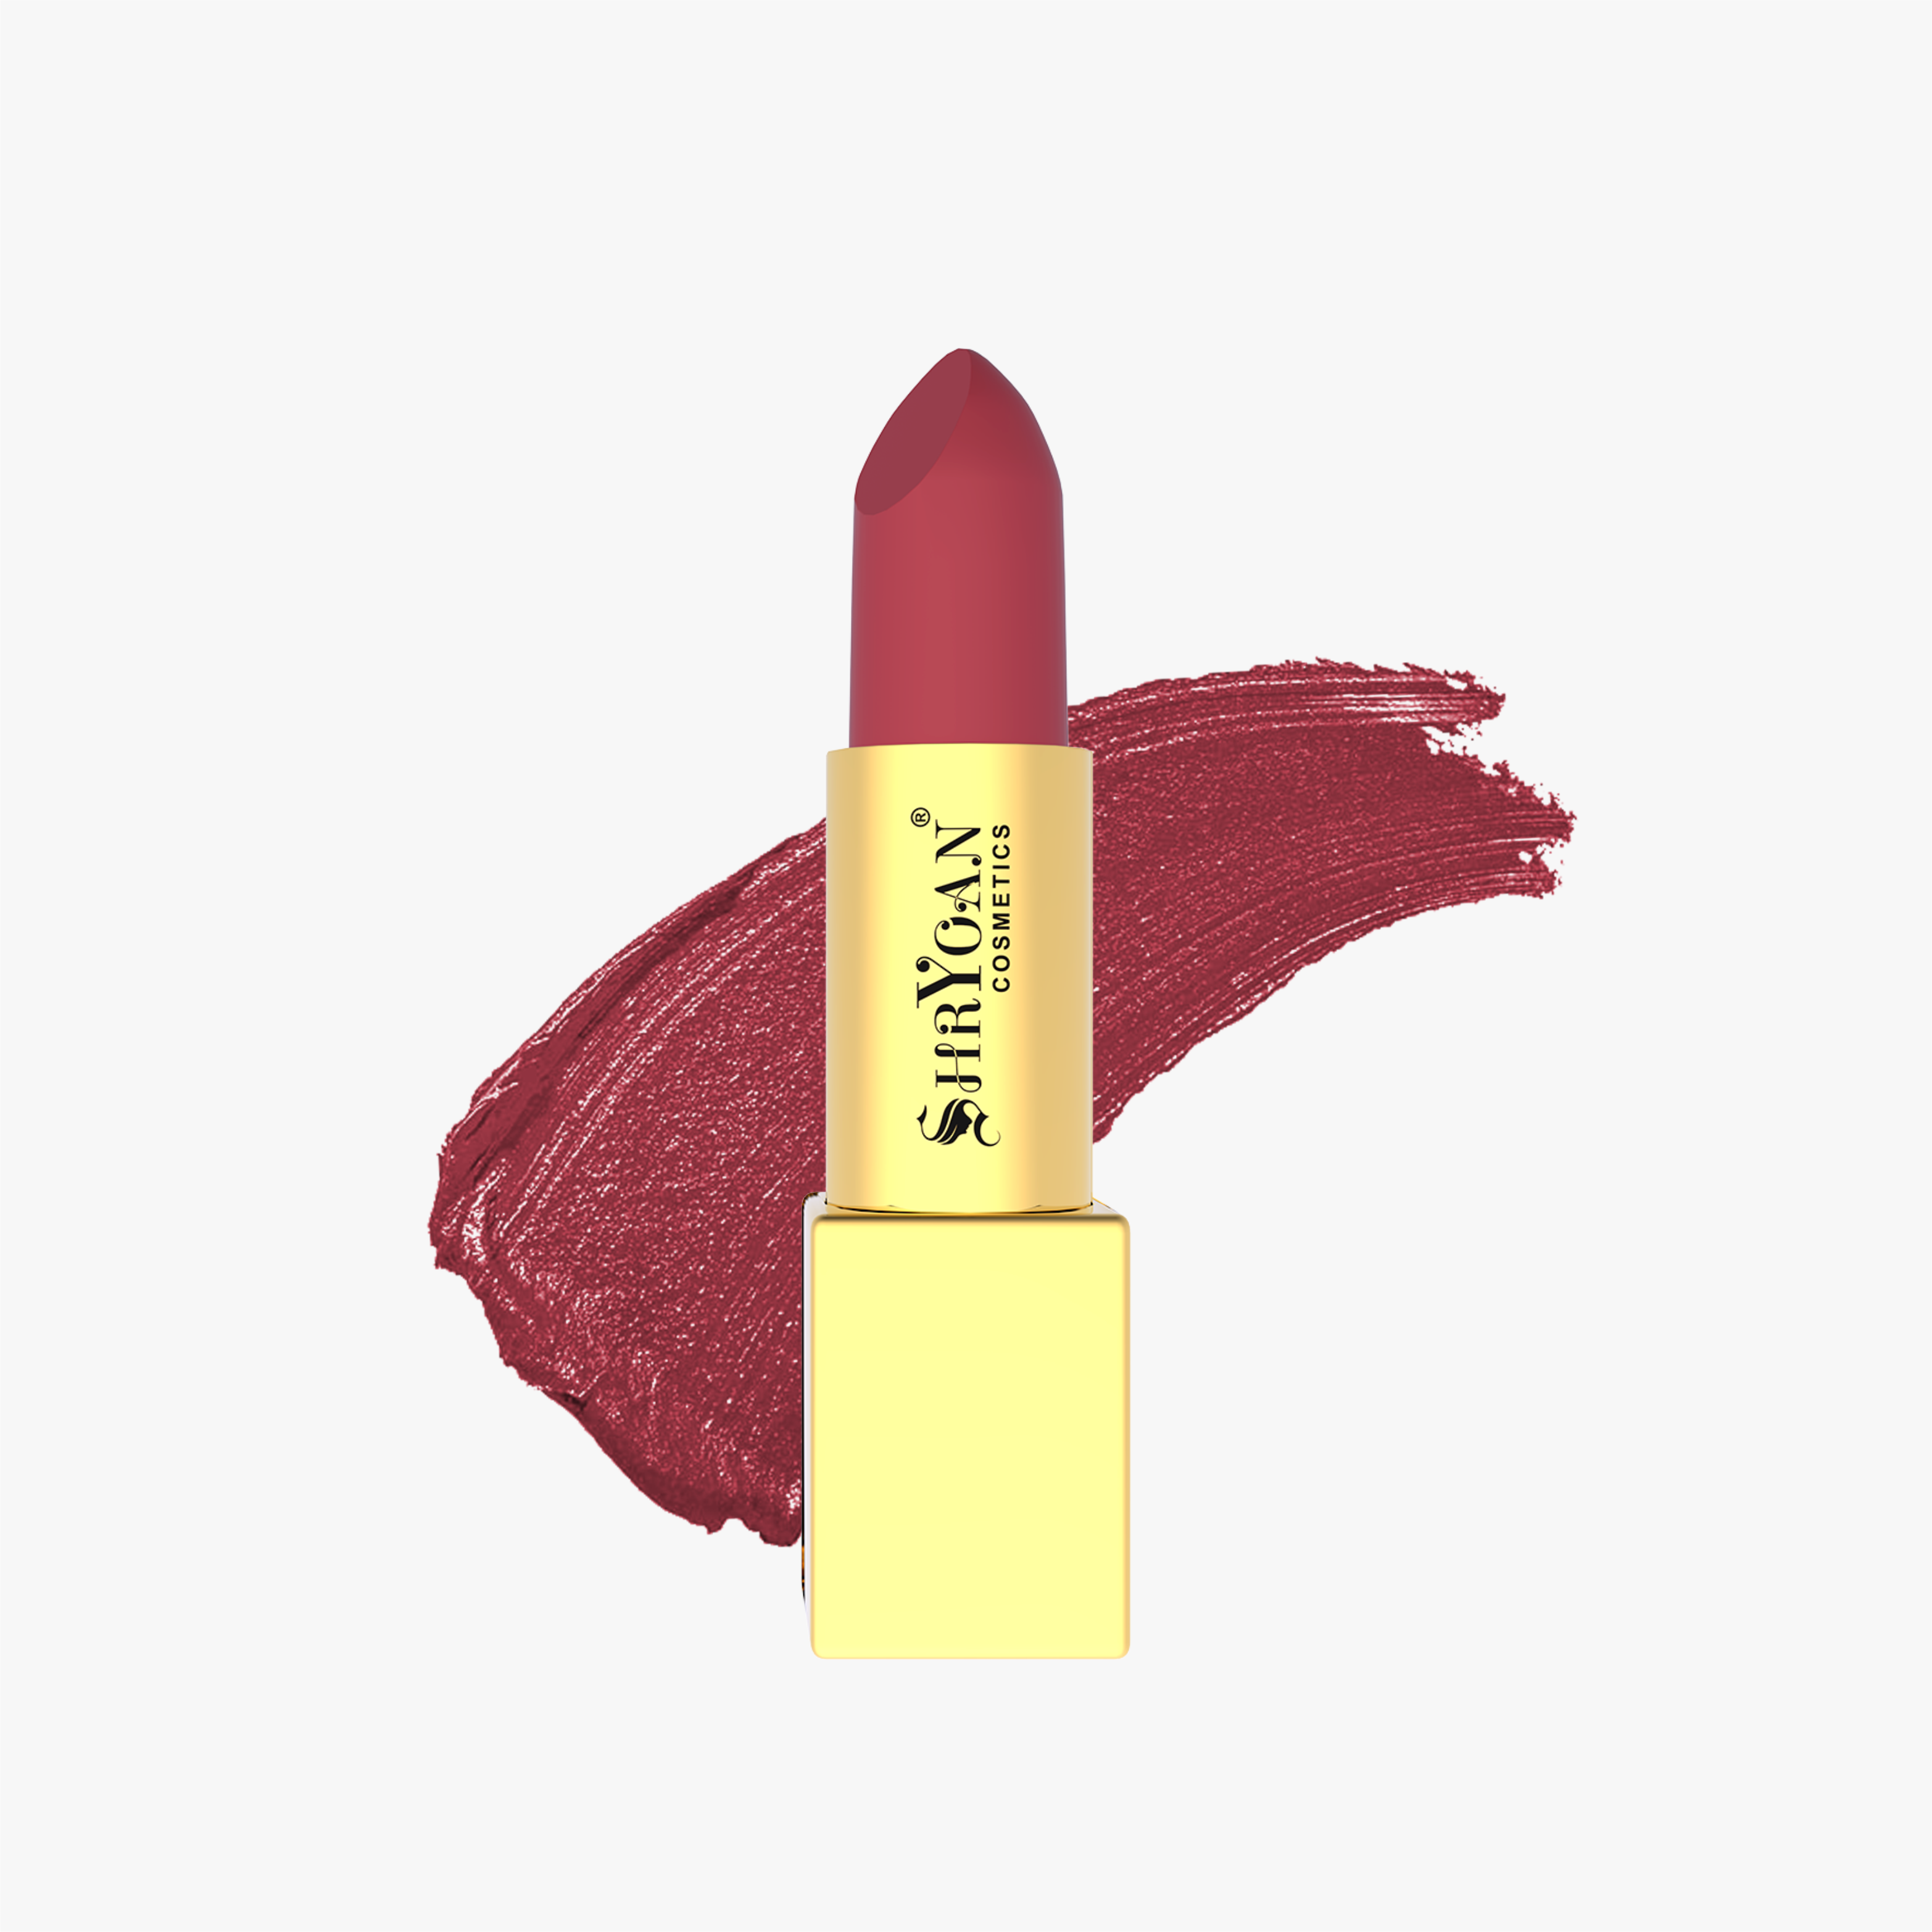 Shryoan Soft Touch Lipstick